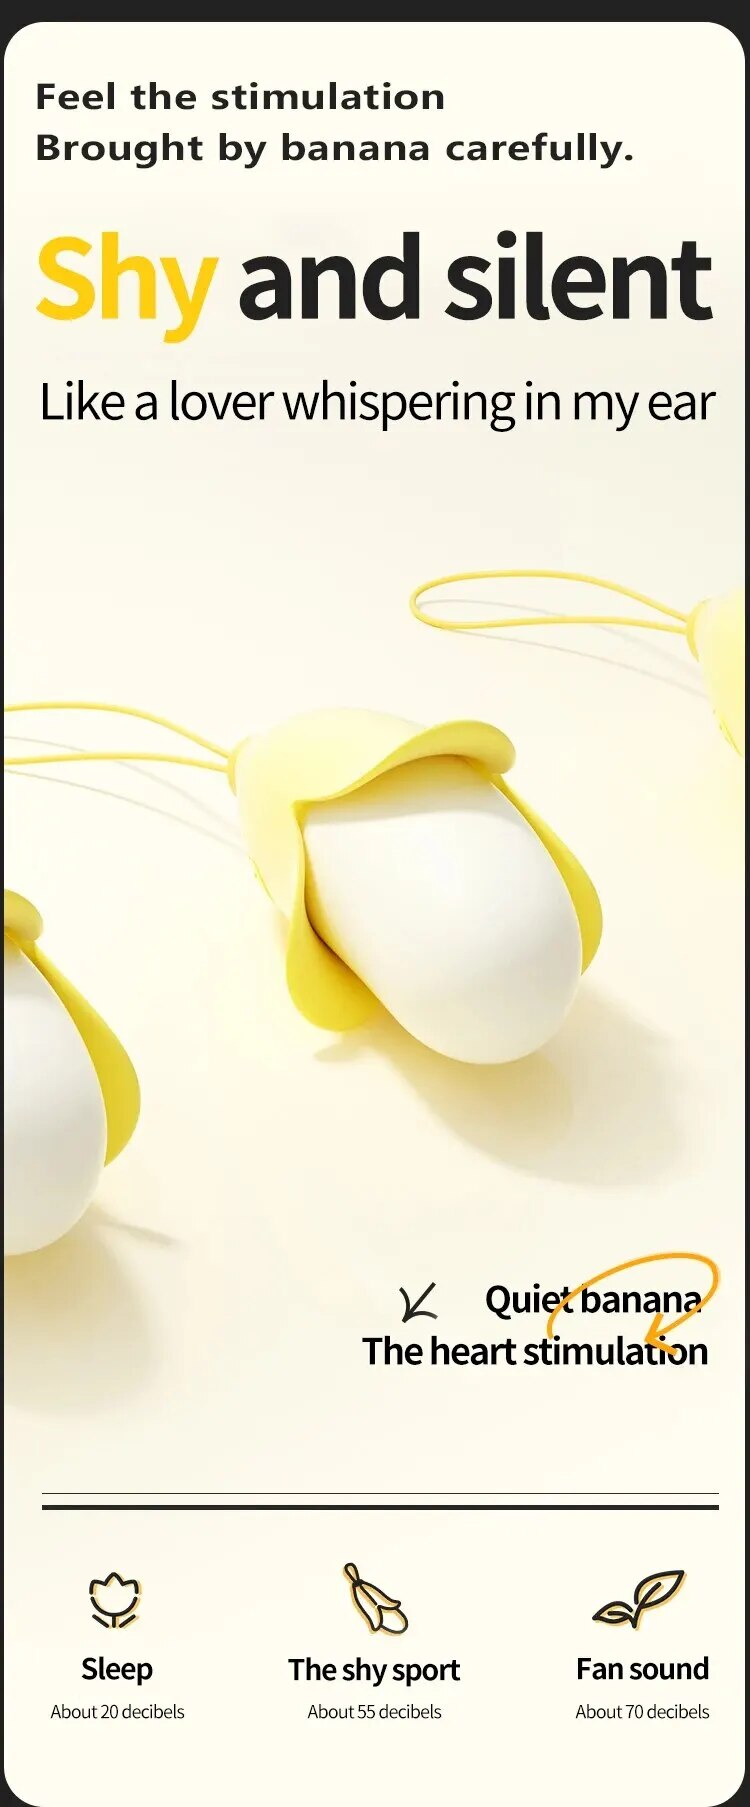 Đánh giá Trứng rung mini nhỏ gọn hình quả chuối vàng silicon siêu mềm giá tốt